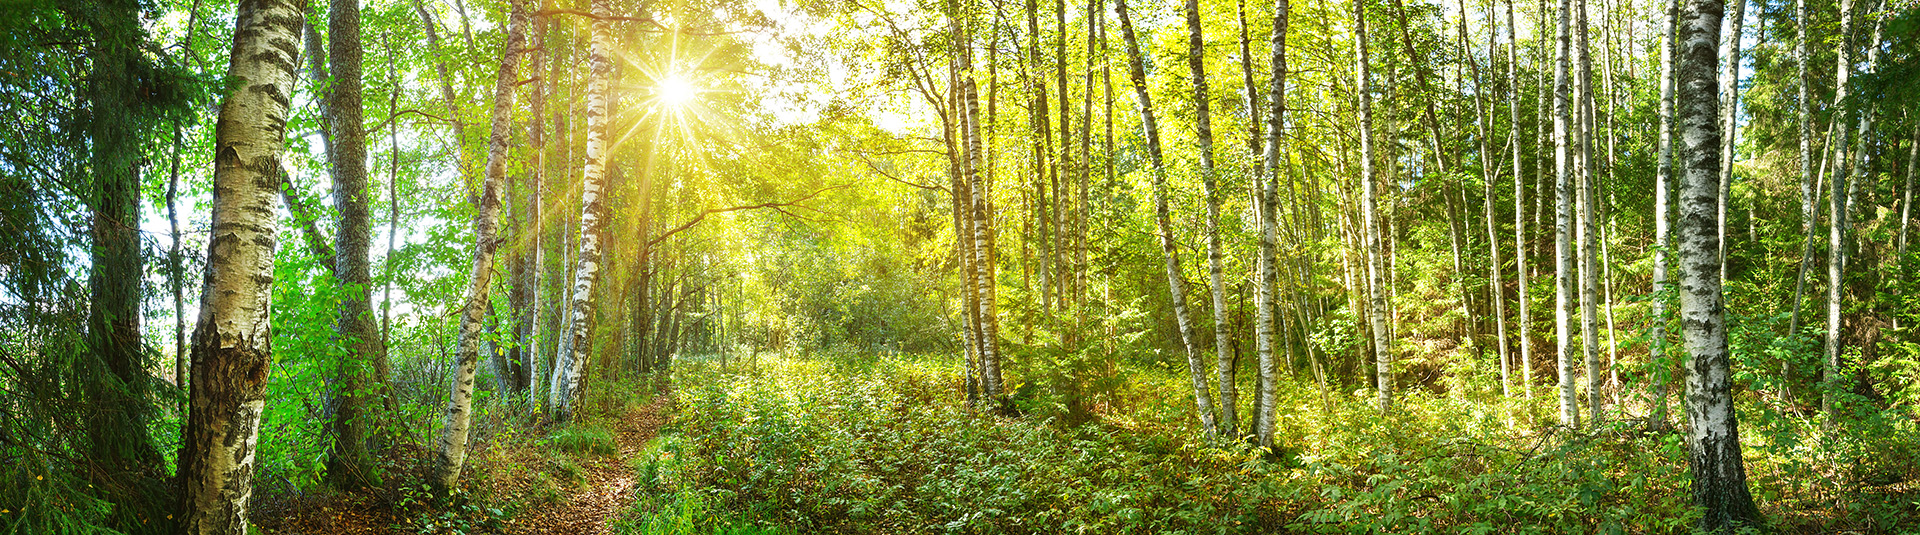 Miljö och hållbarhet - skog